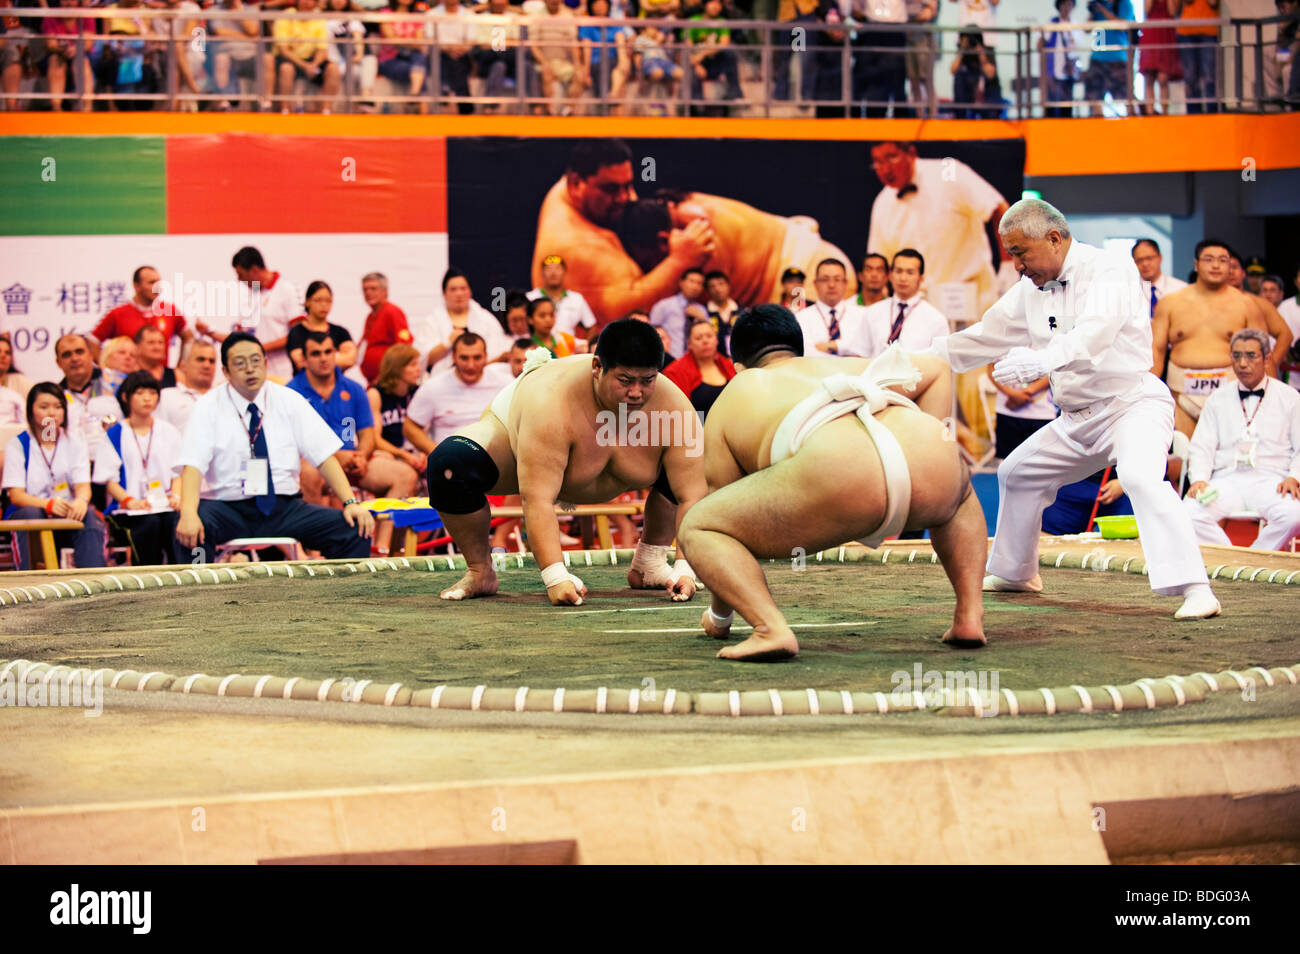 Sumo Wrestling, mondo giochi, Kaohsiung, Taiwan, luglio 18, 2009 Foto Stock